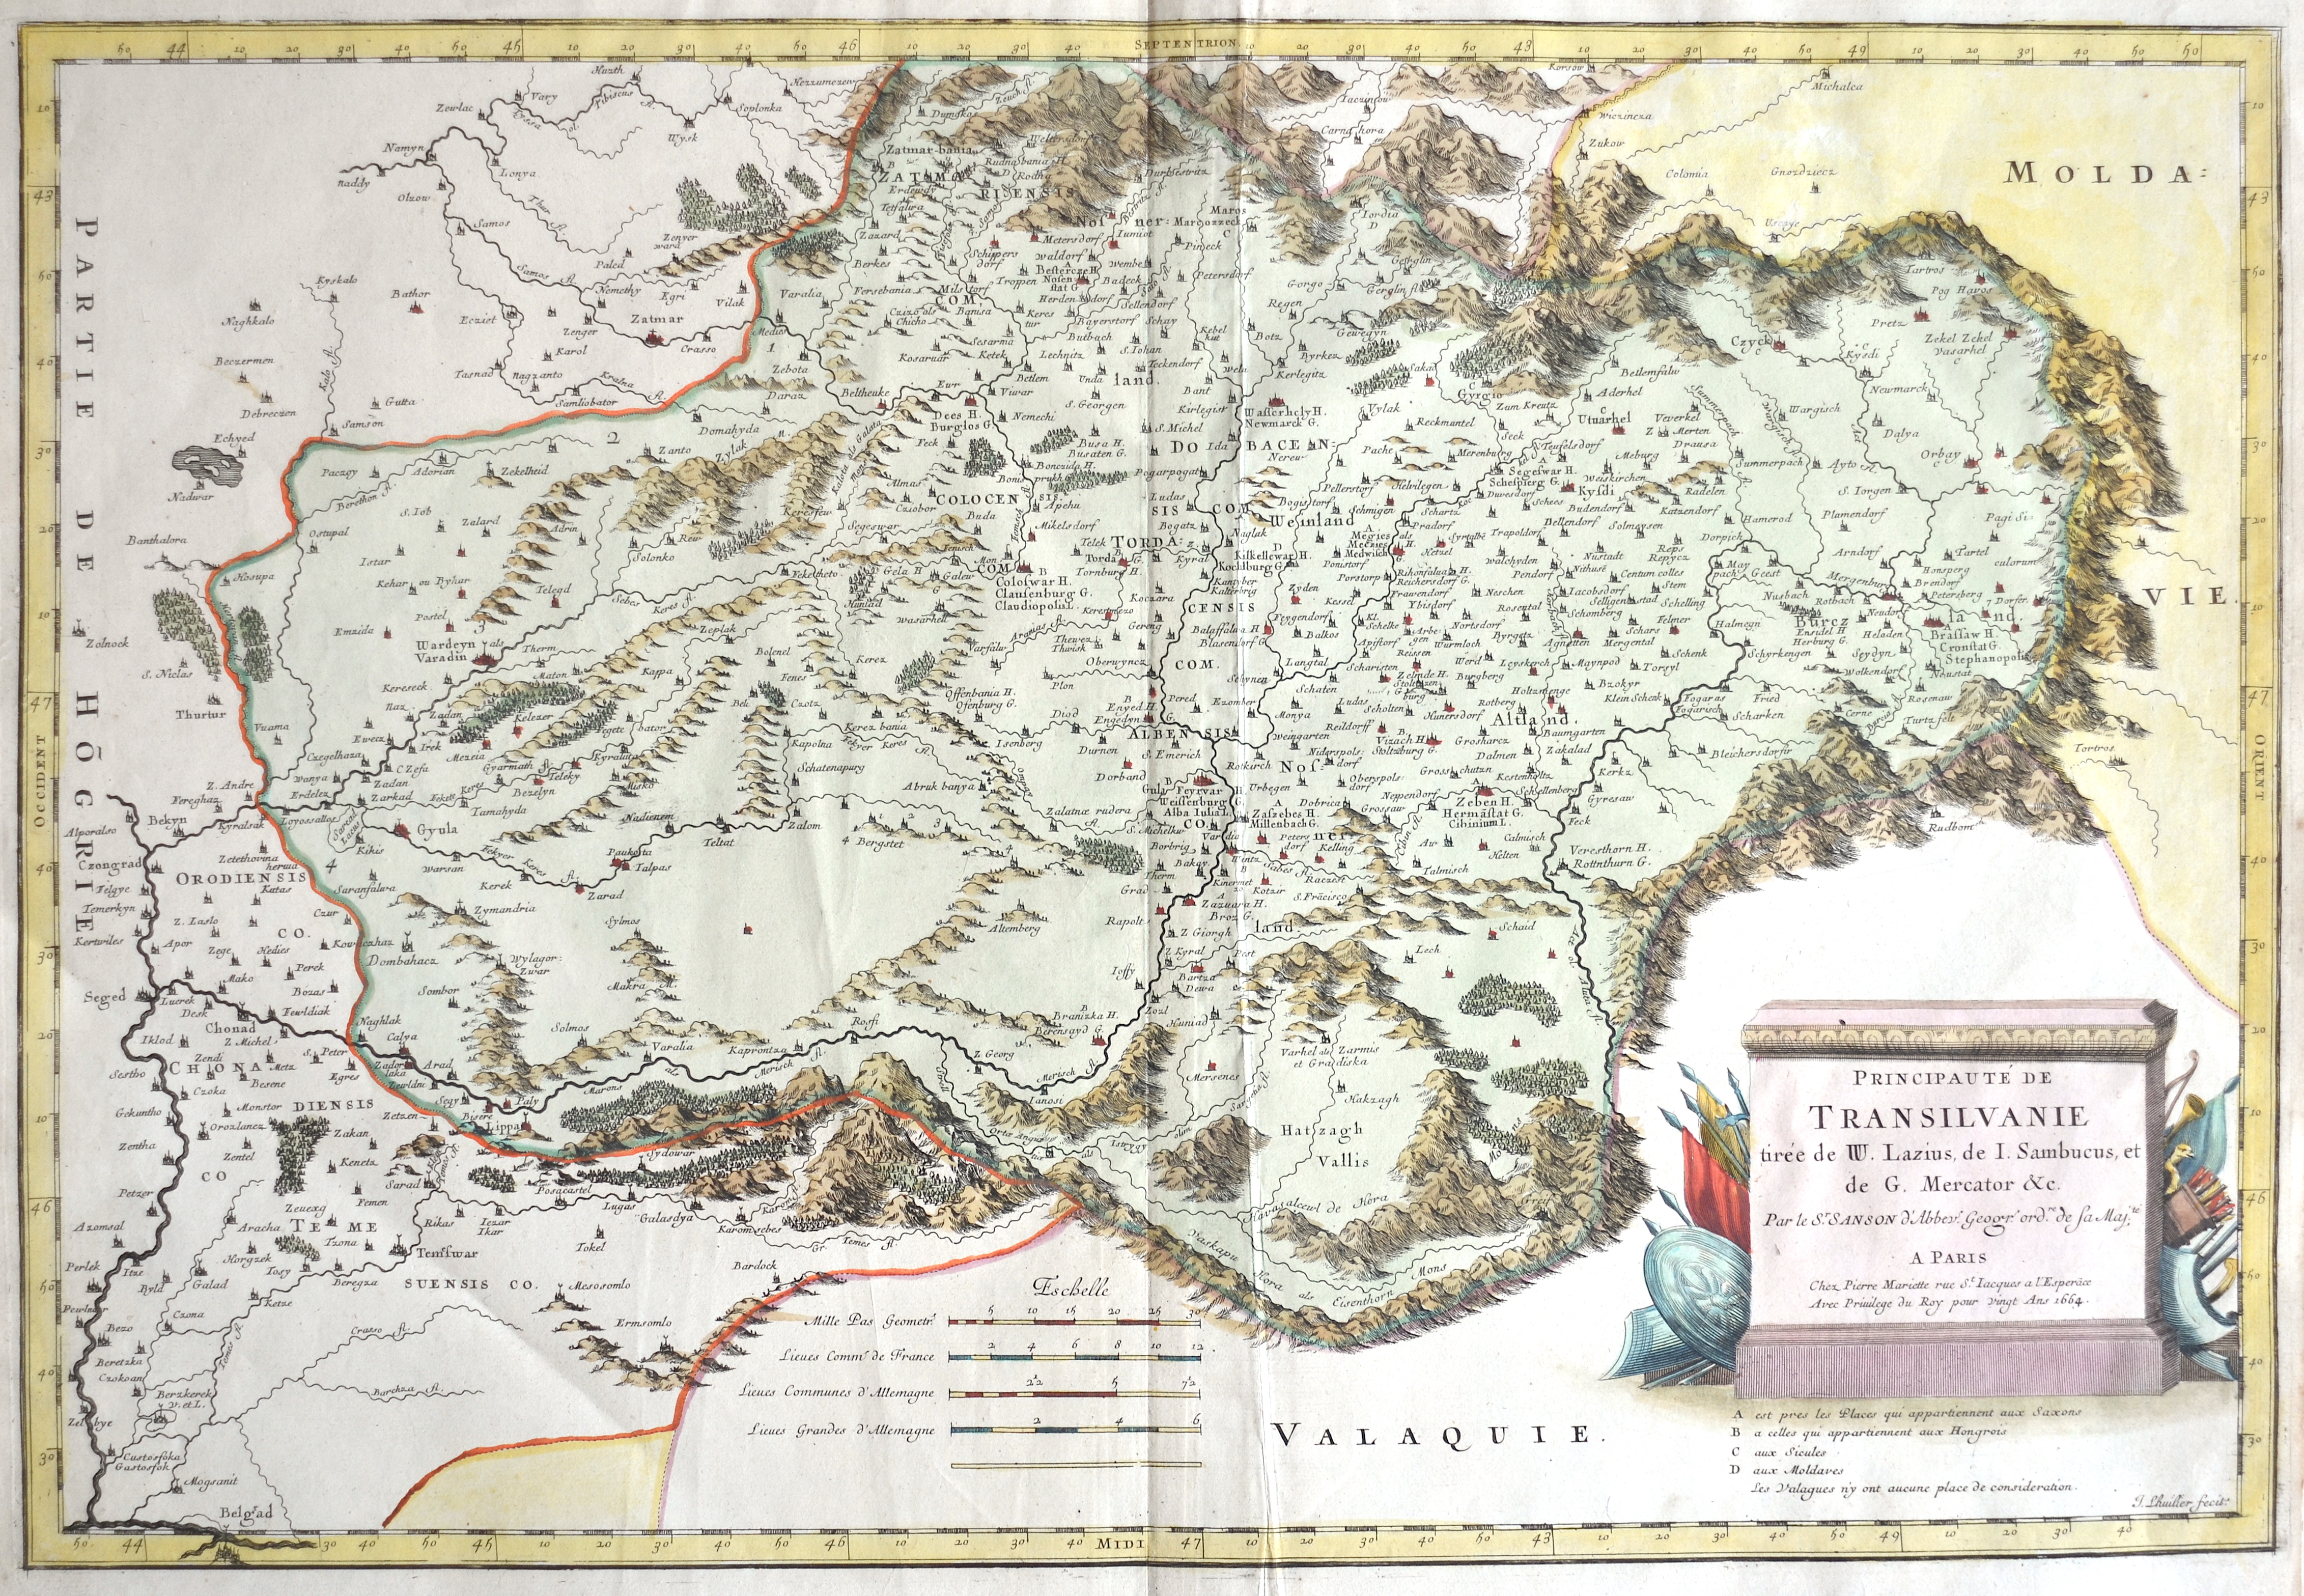 Mariette Pierre Principauté de Transilvanie tirée de W. Lauzius, de I. Sambucus,et de G. Mercator & c.